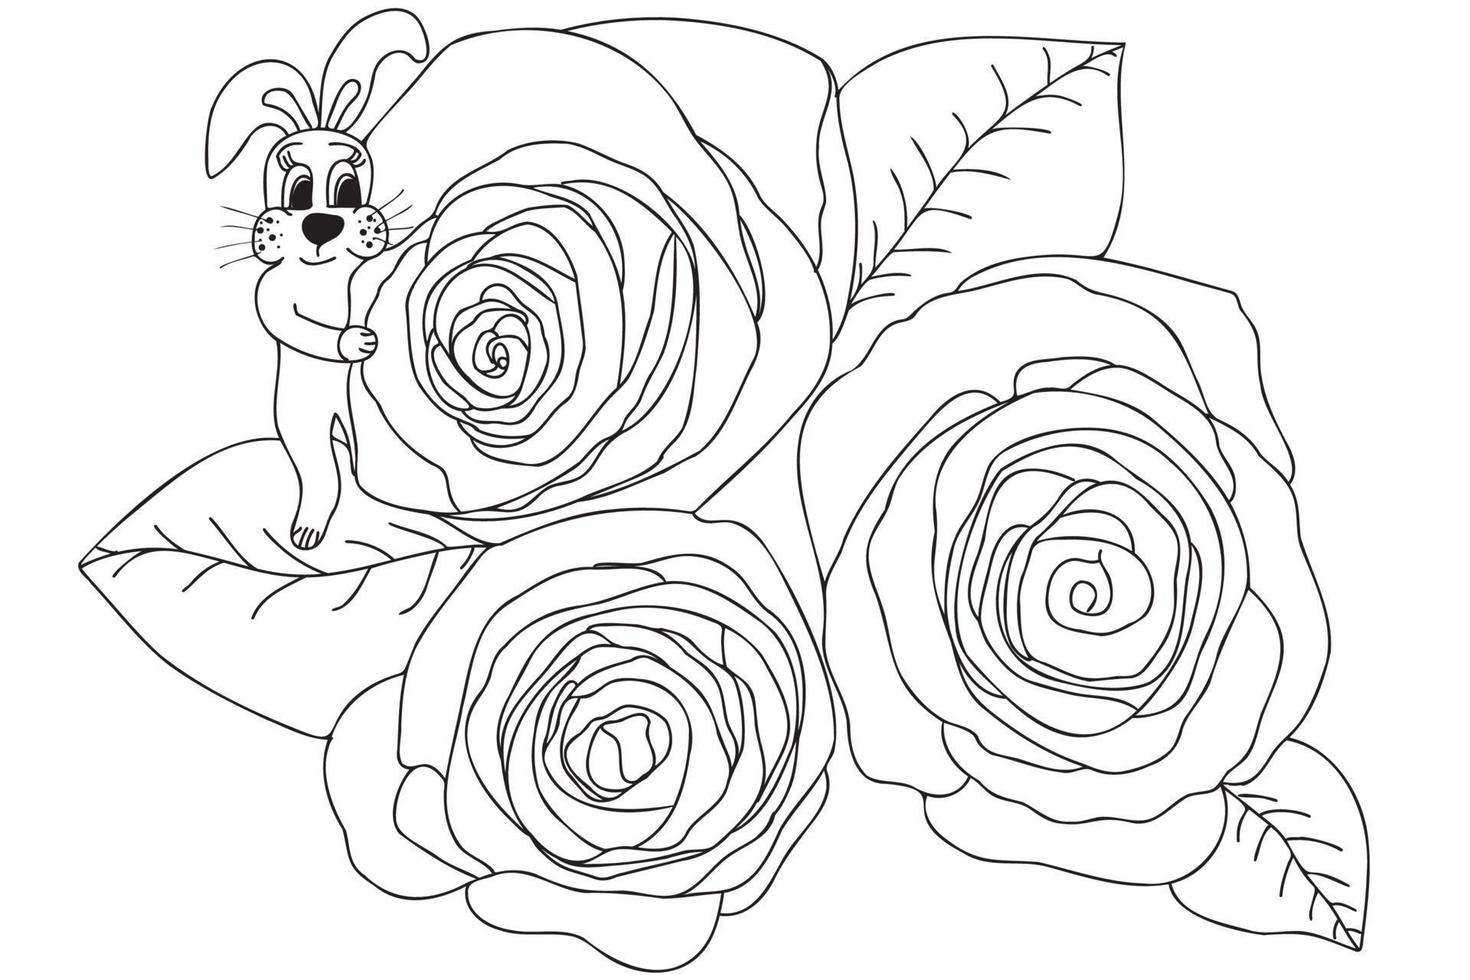 lapin avec vecteur de contour de roses, illustration d'art en ligne avec contour mince noir isolé sur fond blanc. lapin debout sur un bouquet de roses.